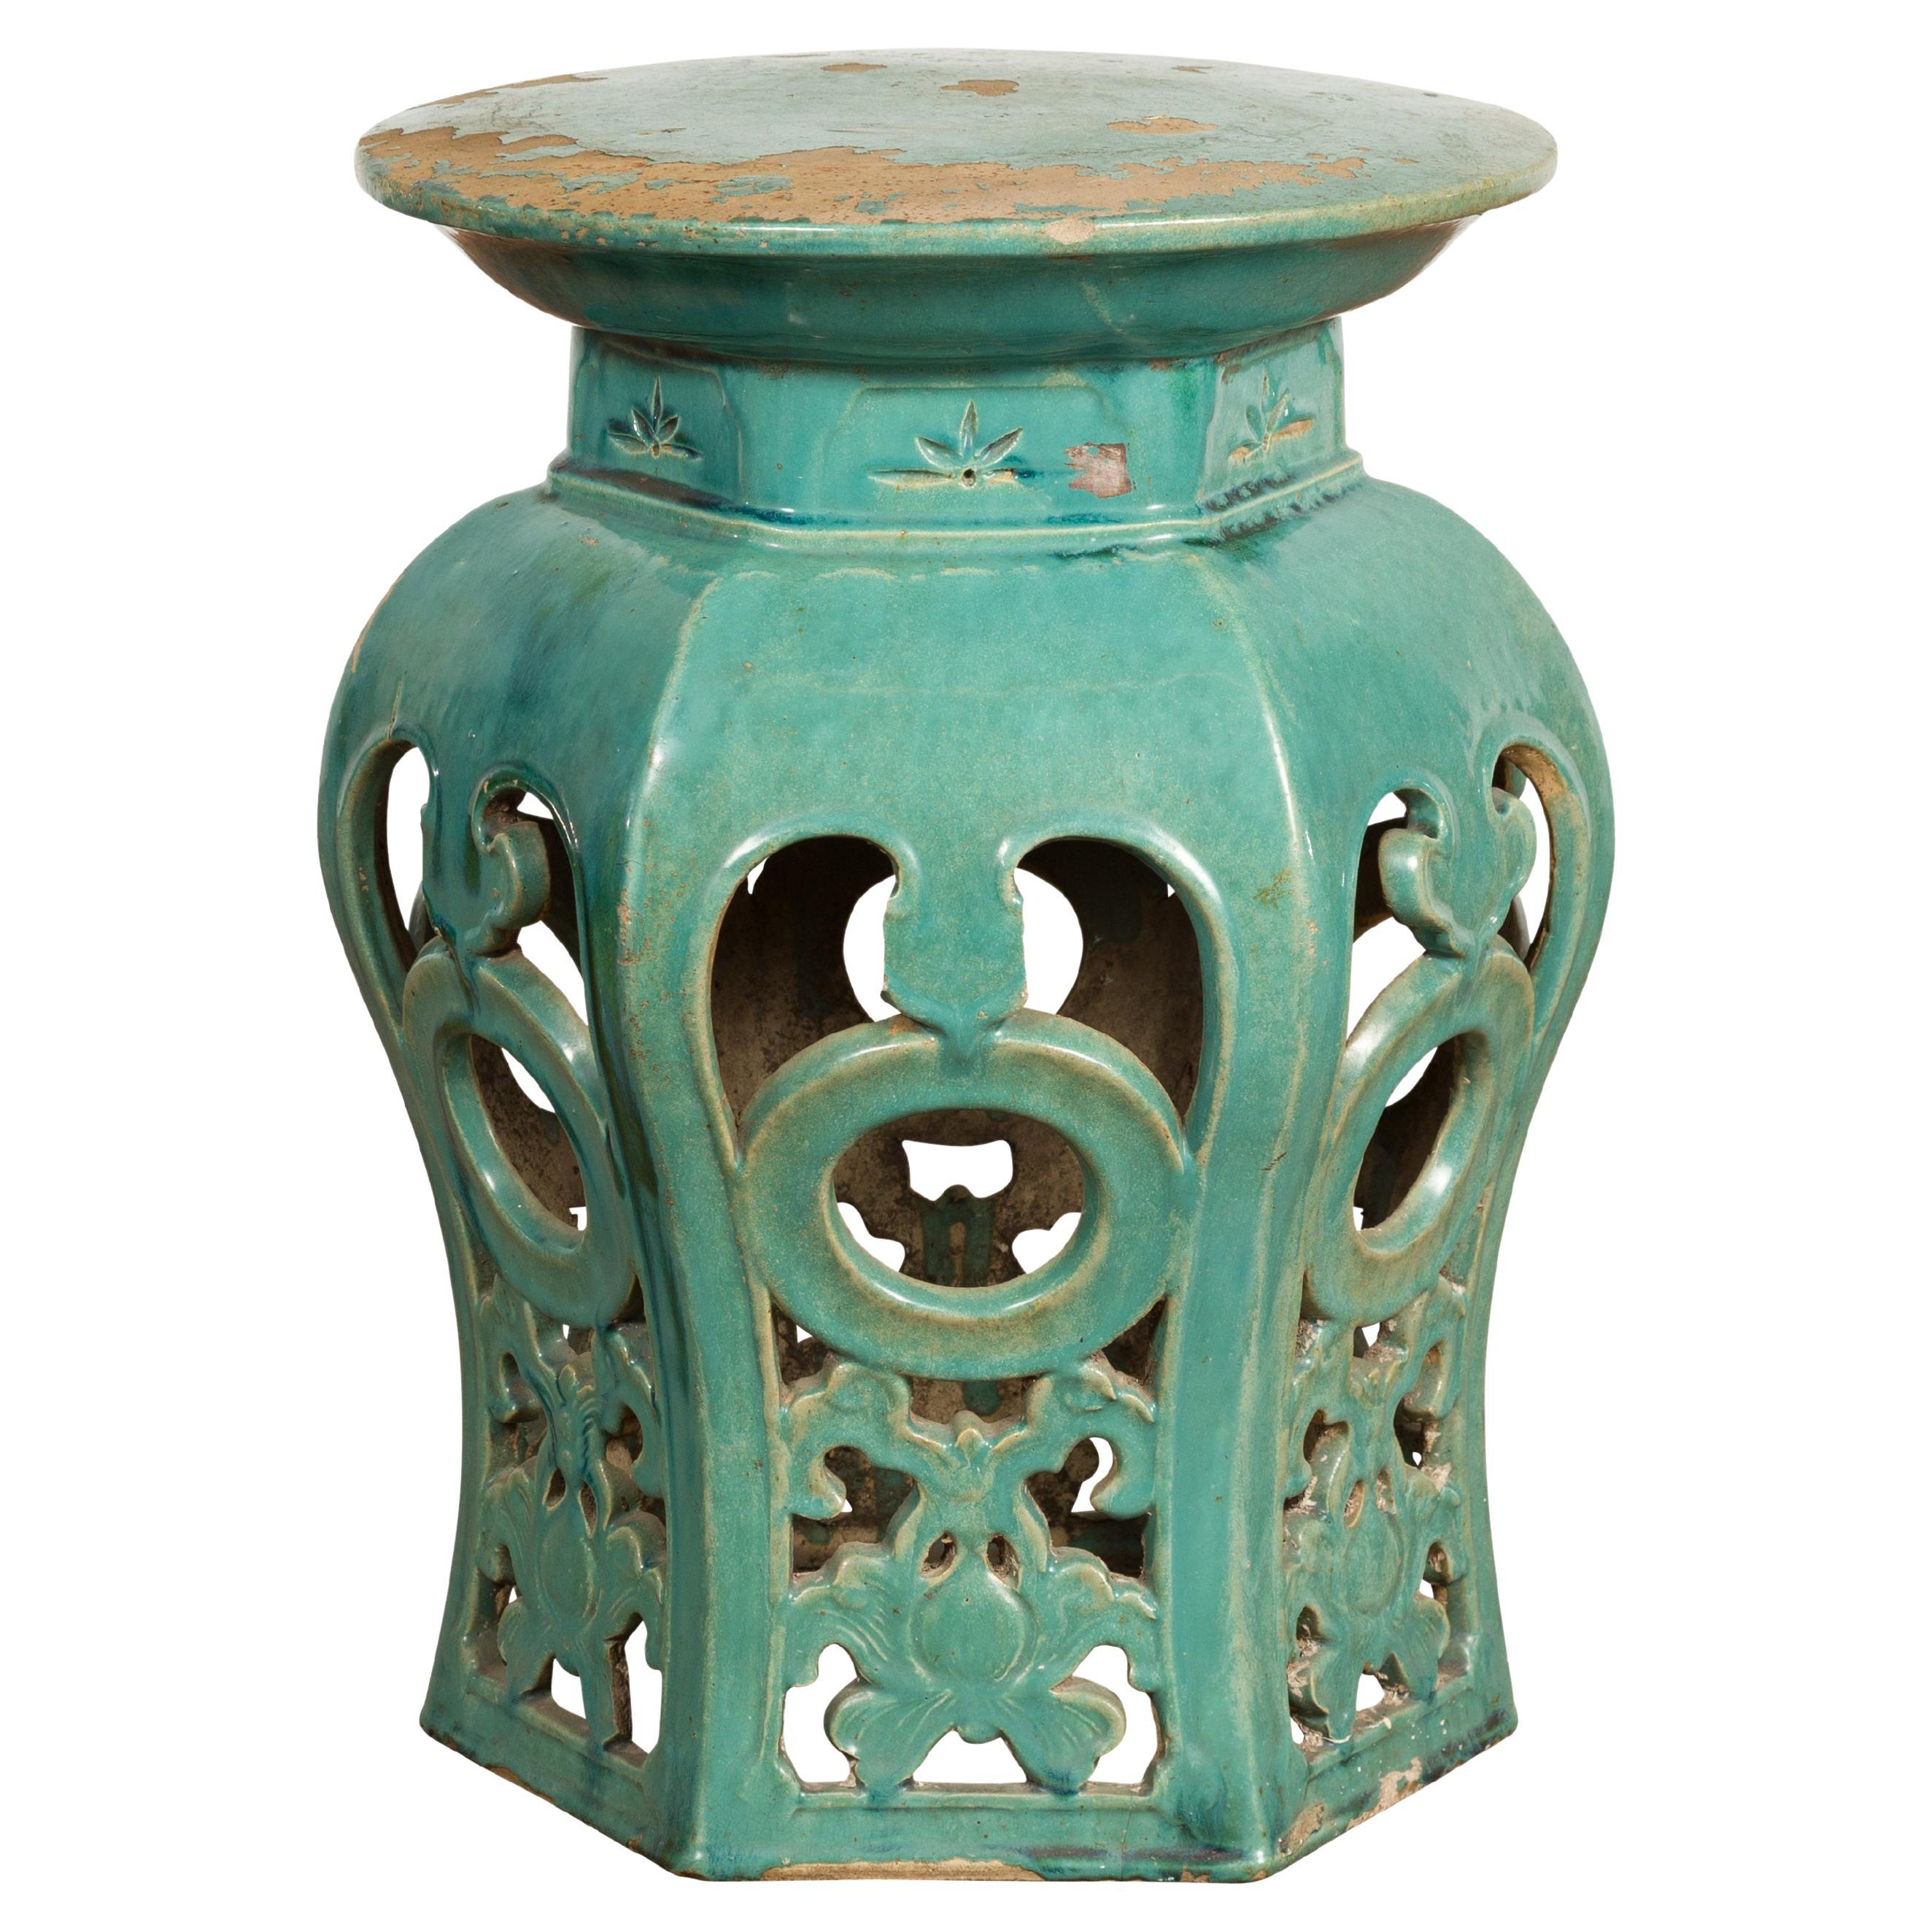 Qing Dynasty 19th Century Blue Green Glazed Ceramic Stool